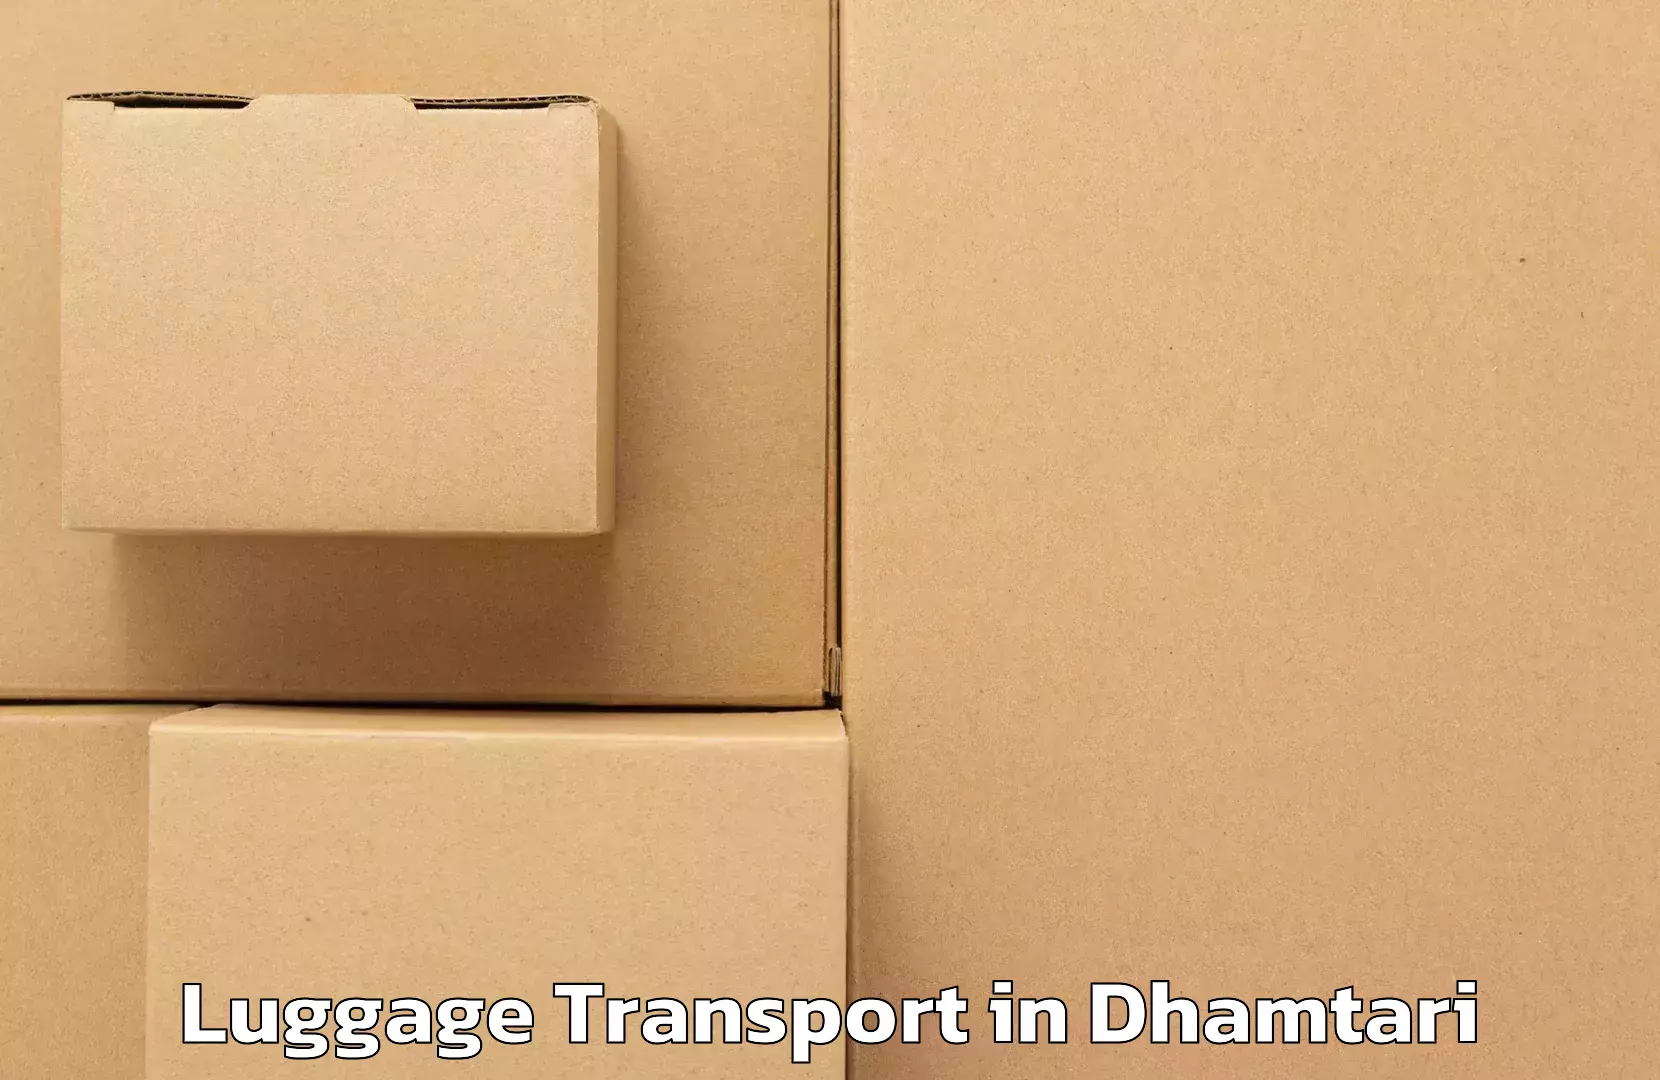 Baggage transport estimate in Dhamtari